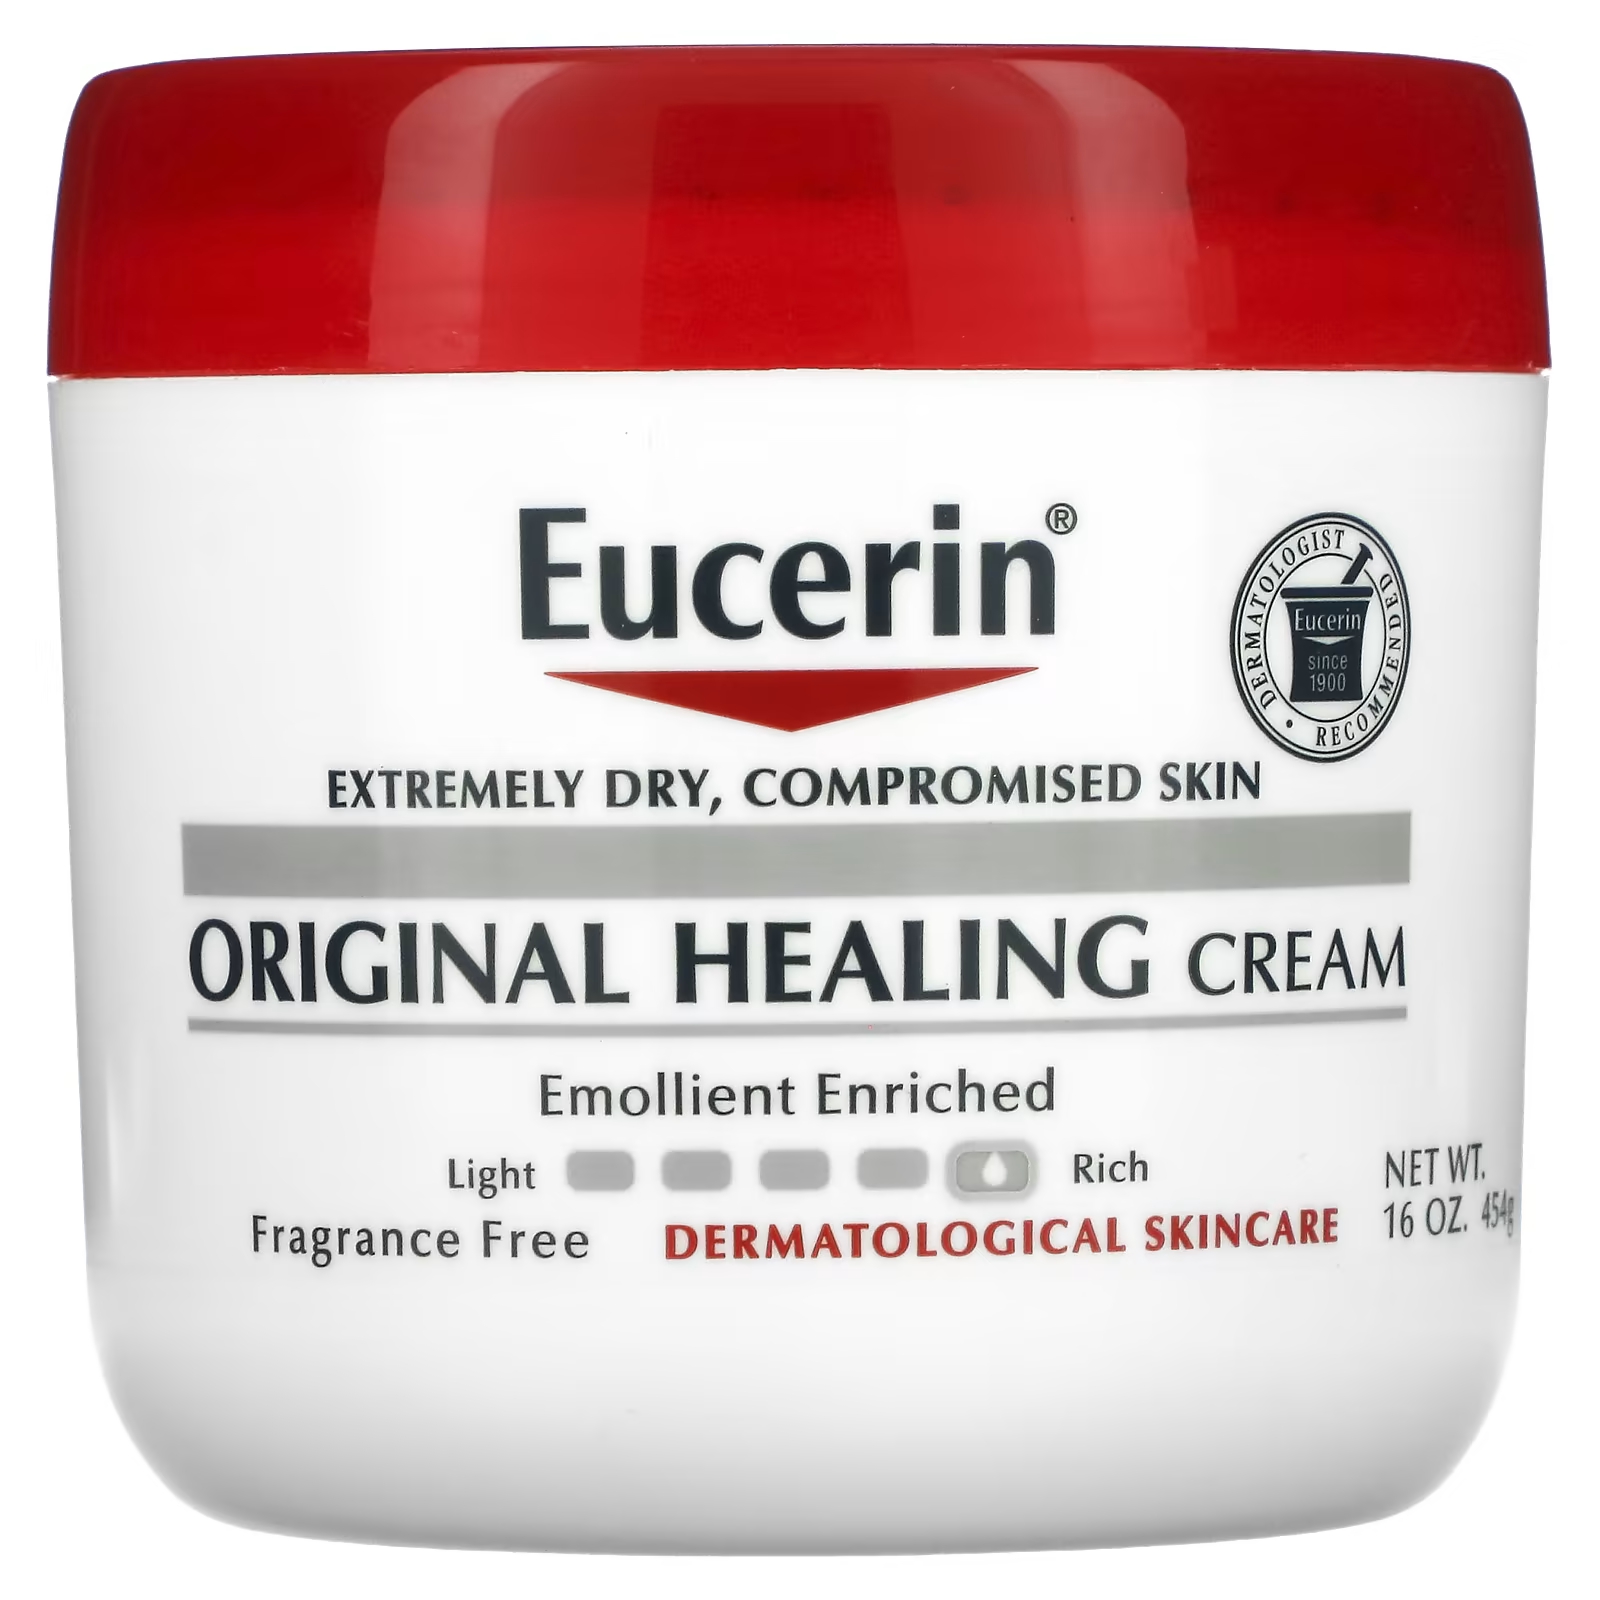 Eucerin Original Healing Cream для очень сухой проблемной кожи, без ароматизаторов, 16 унций (454 г)